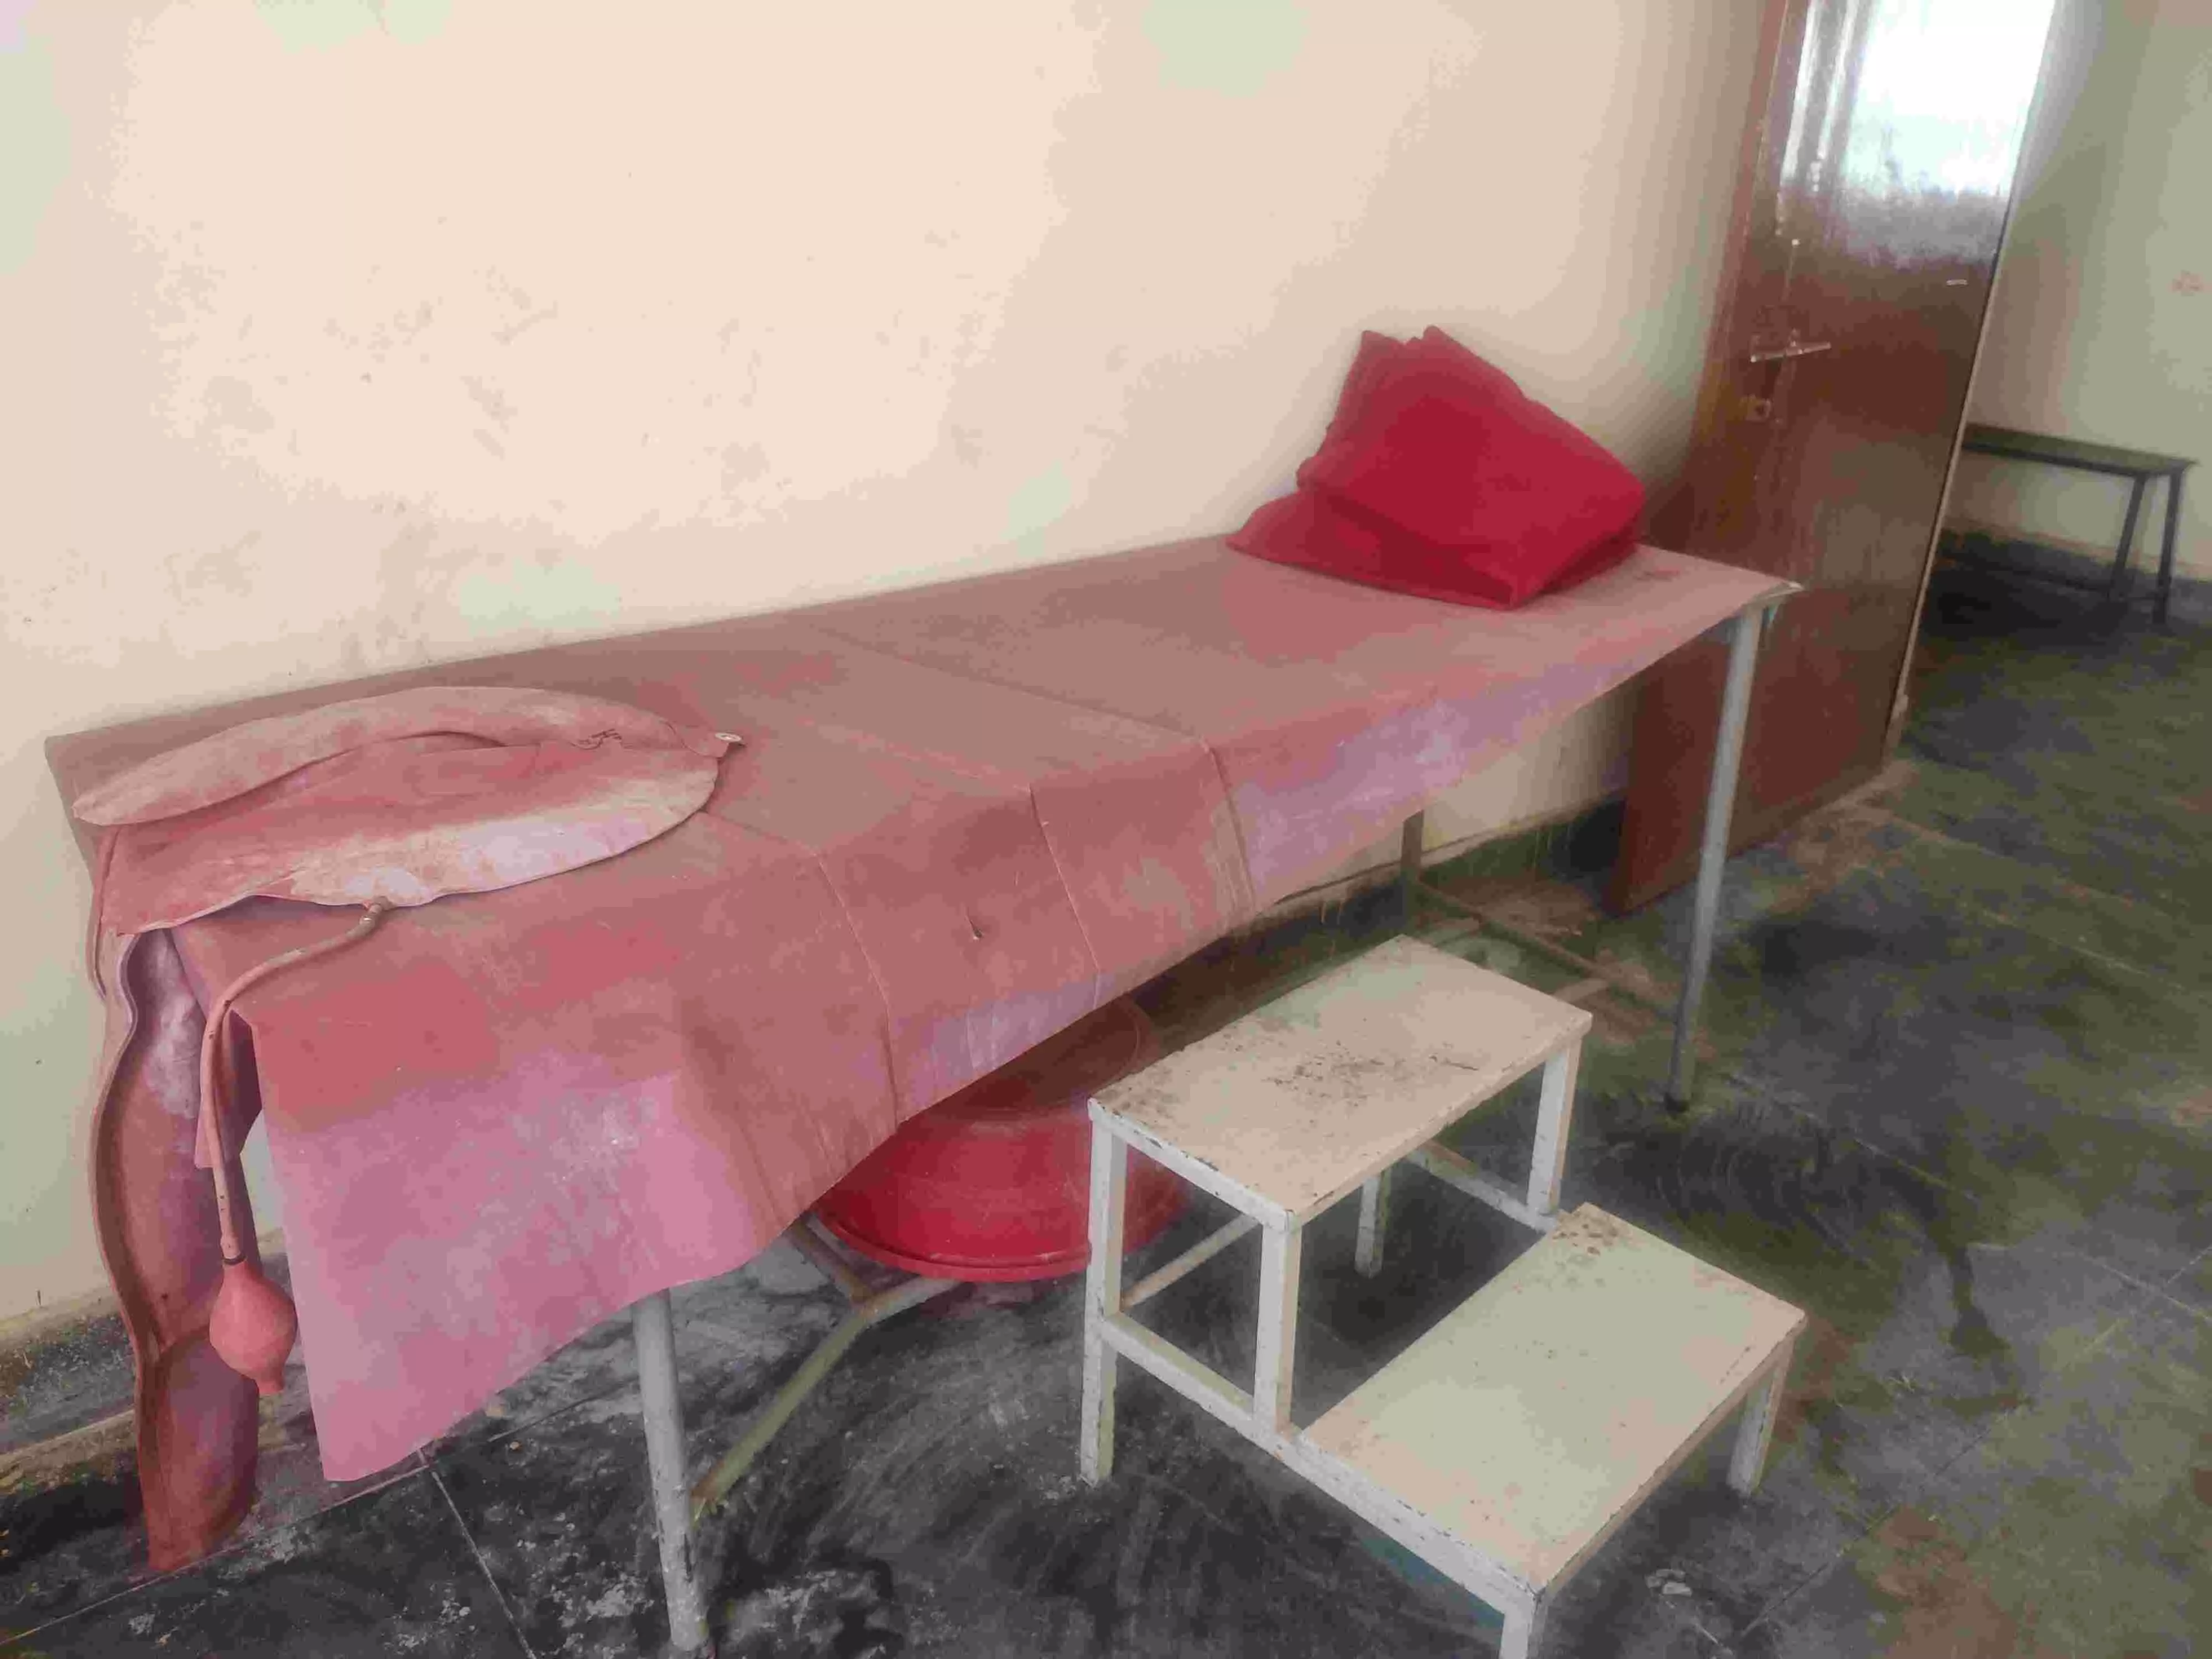 हर‍िदत्‍तनगर गिरंट पीएचसी के लेबर रूम का बेड ज‍िसपर ड‍िल‍िवरी होती है। यह बेड ह‍िलता रहता है और इस रूम का पंखा ब‍िजली की समस्‍या की वजह से कई द‍िनों से नहीं चल रहा था। फोटो: रणव‍िजय सिंह